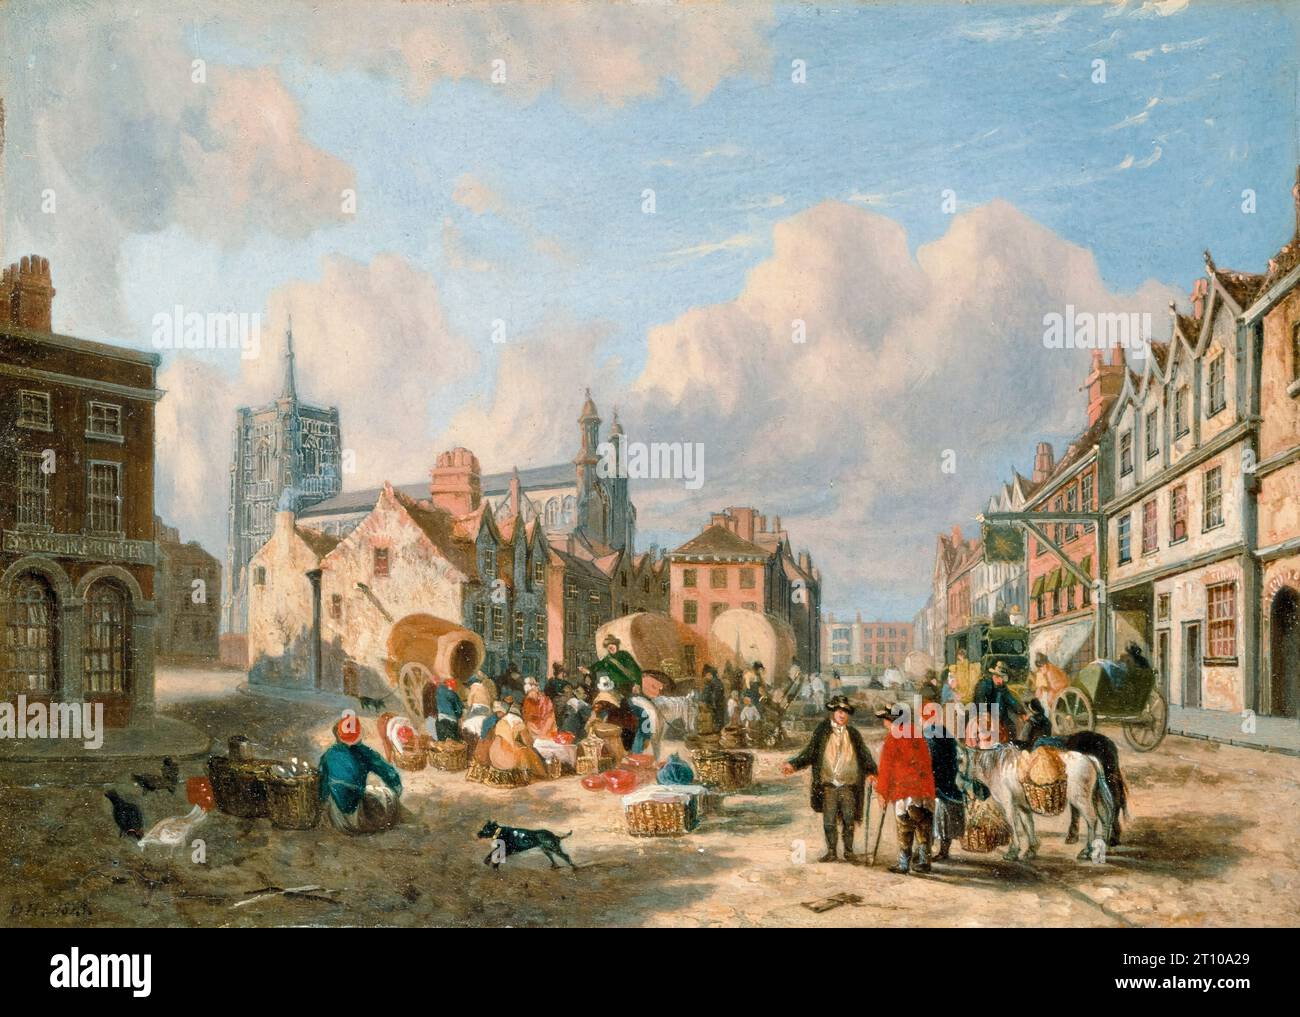 The Haymarket, Norwich, pittura di paesaggio ad olio su tavola di David Hodgson, 1825 Foto Stock